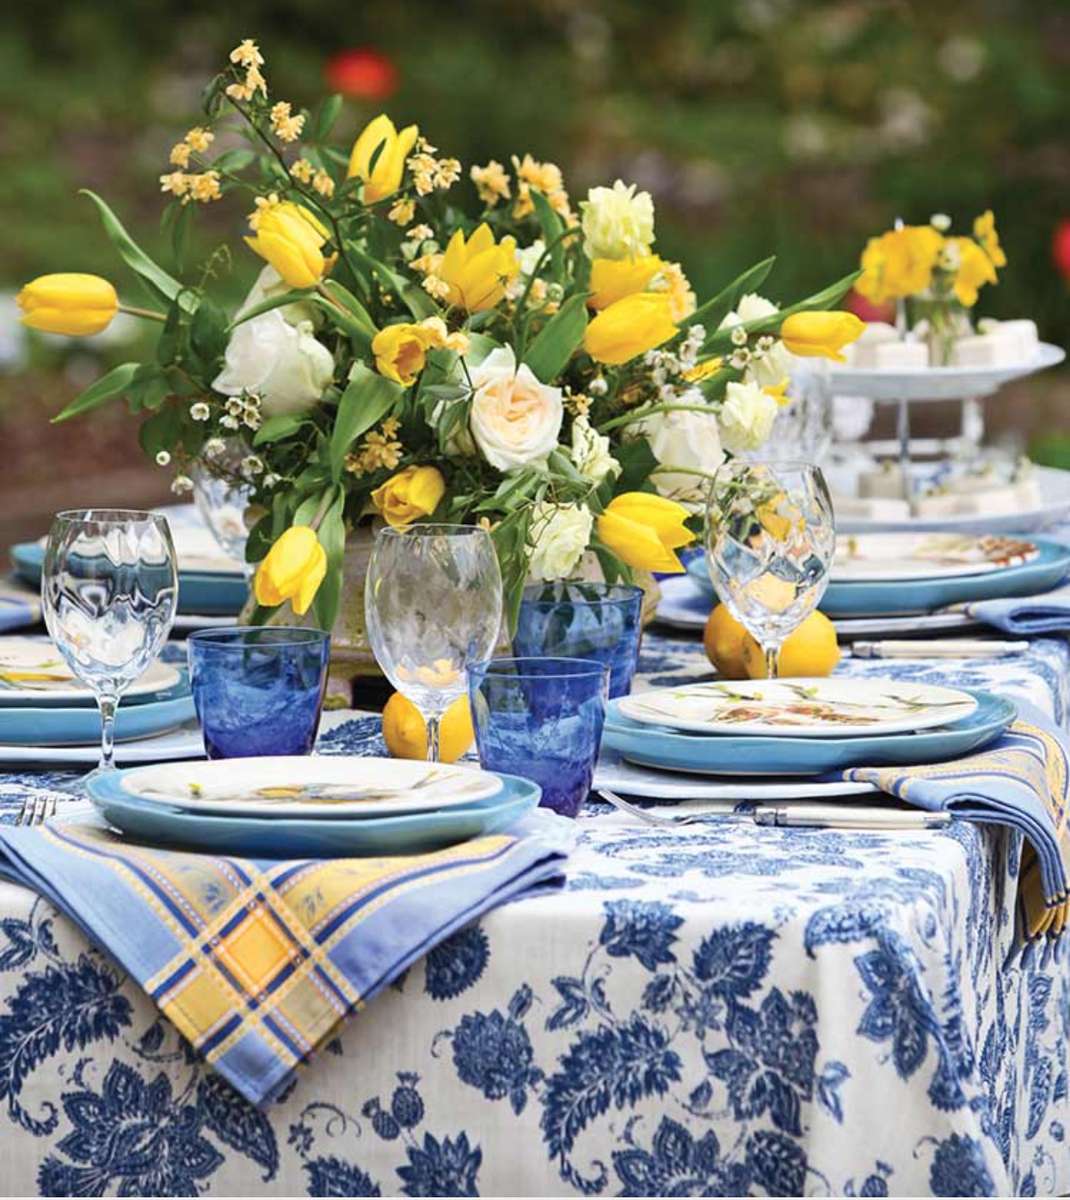 青と黄色の庭のテーブル ジグソーパズルオンライン